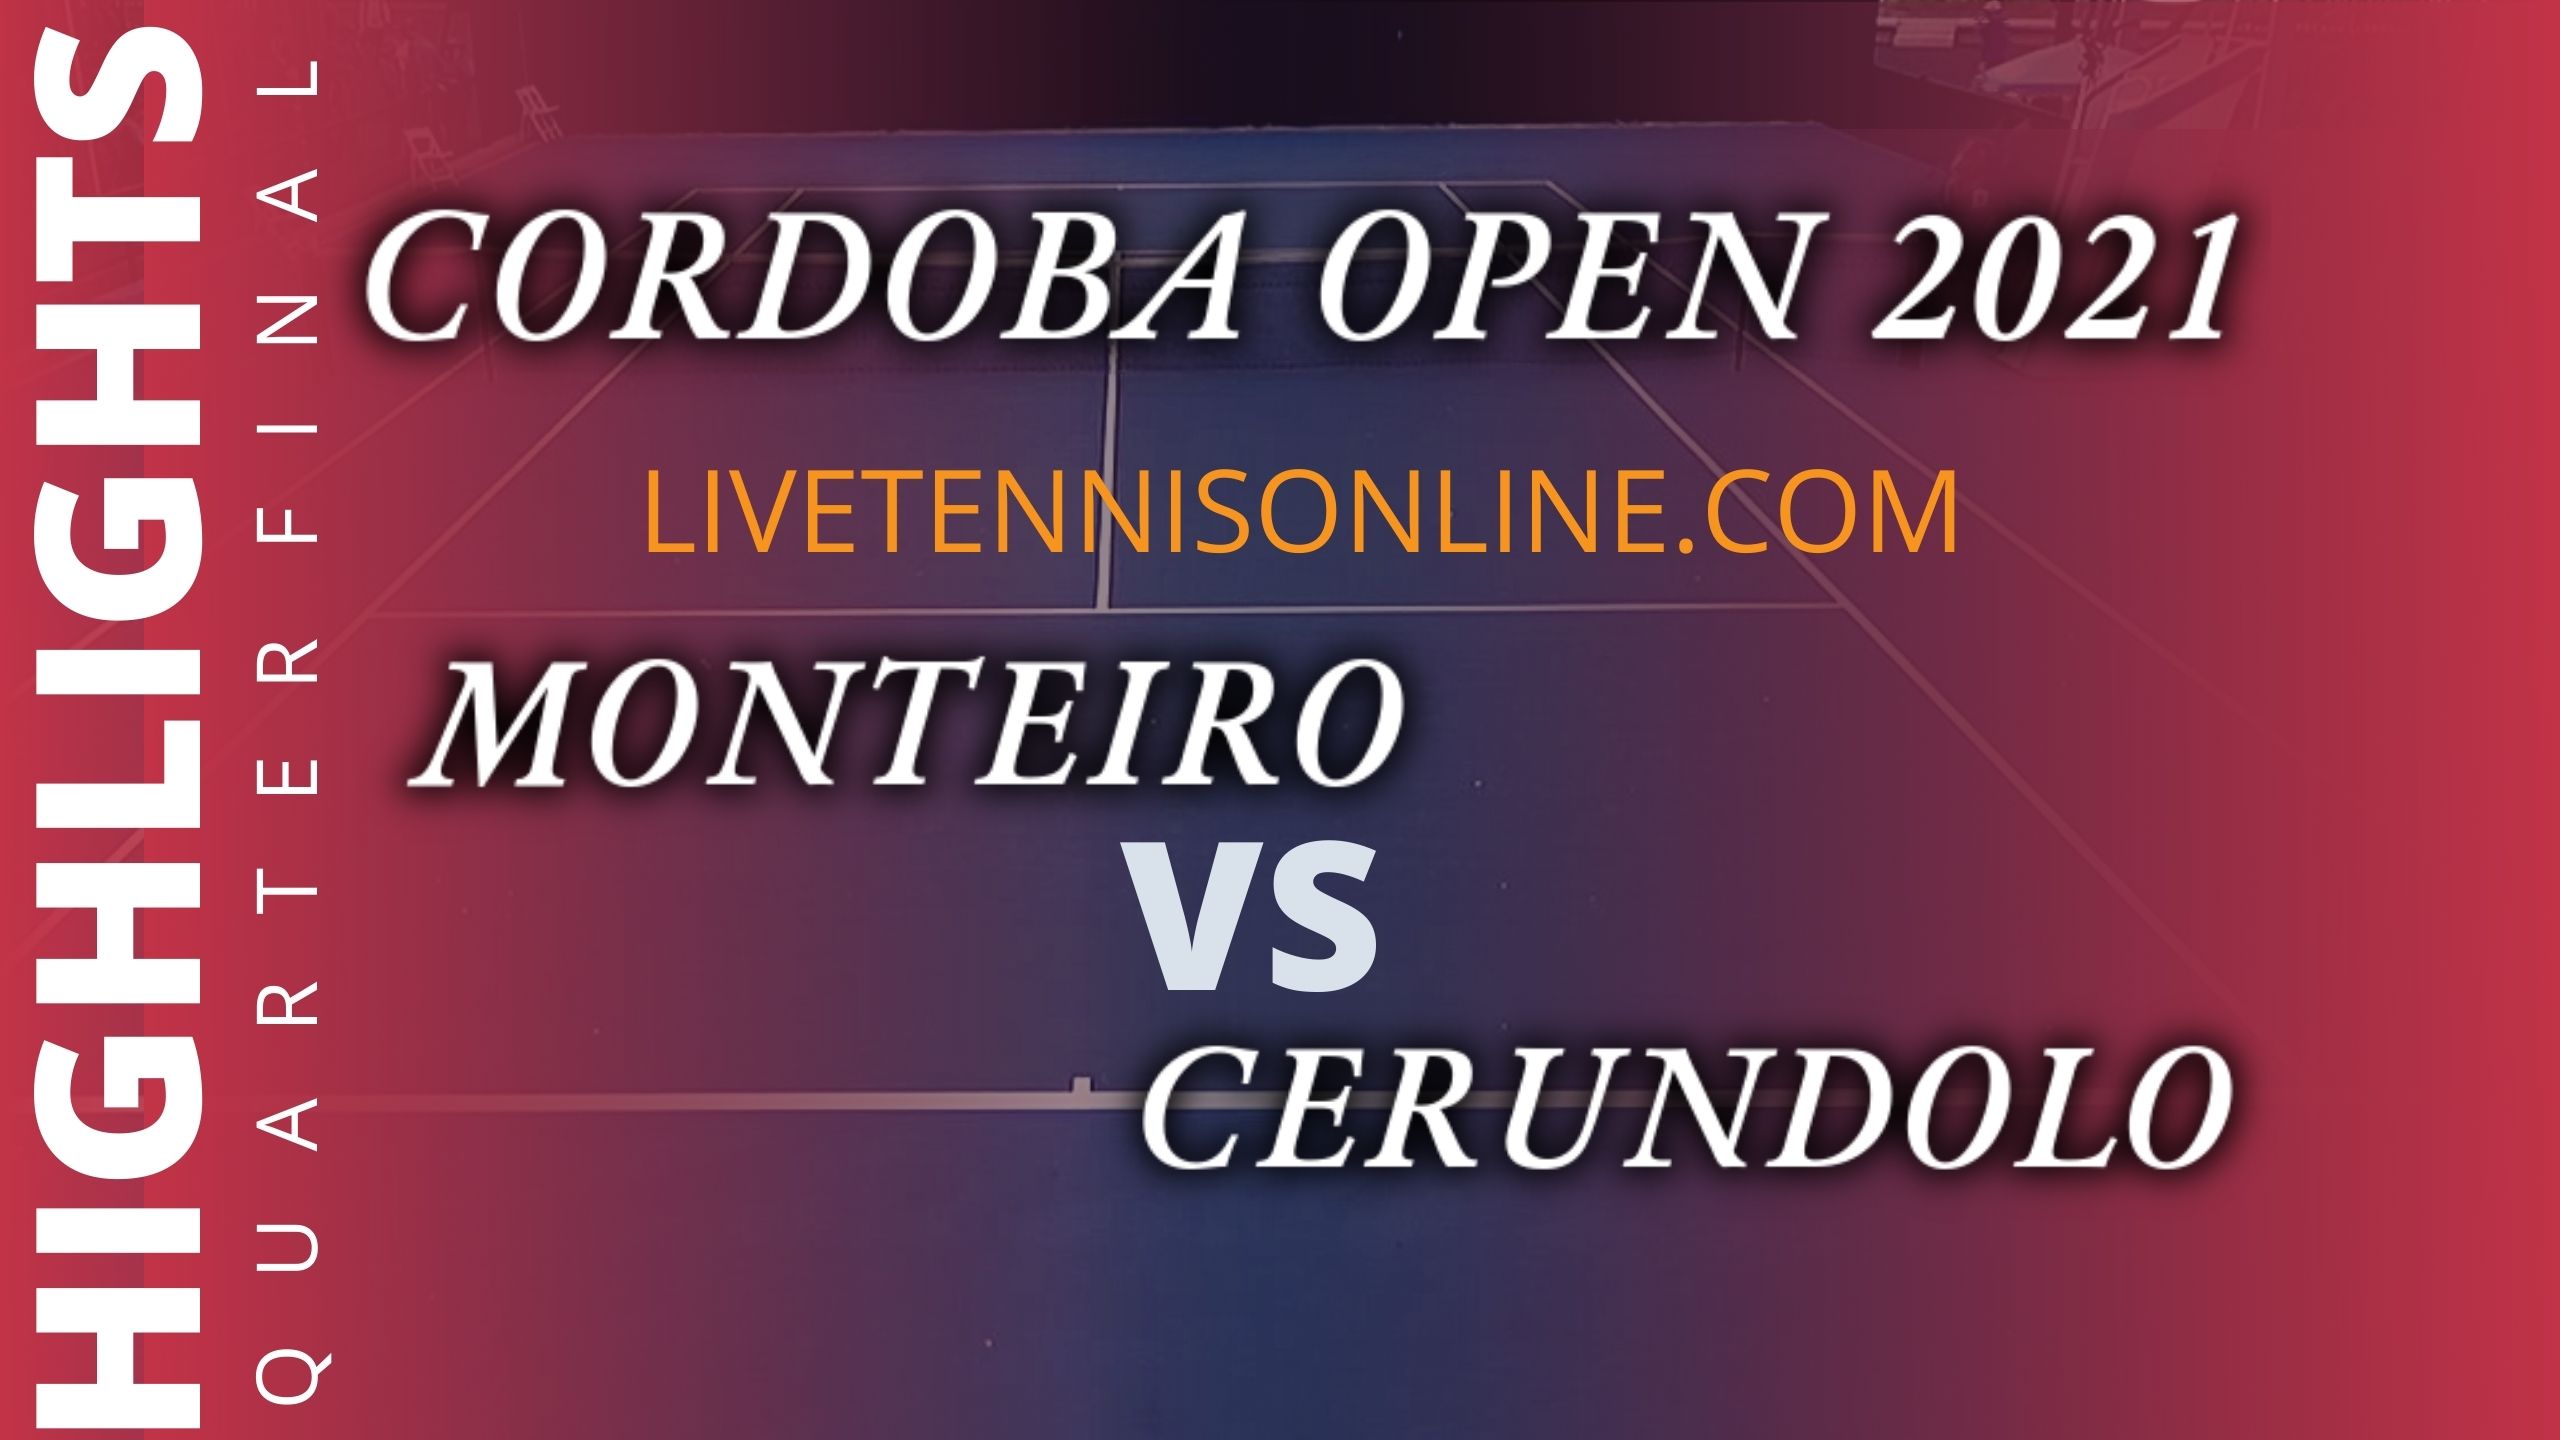 Monteiro Vs Cerundolo Quarterfinal Highlights 2021